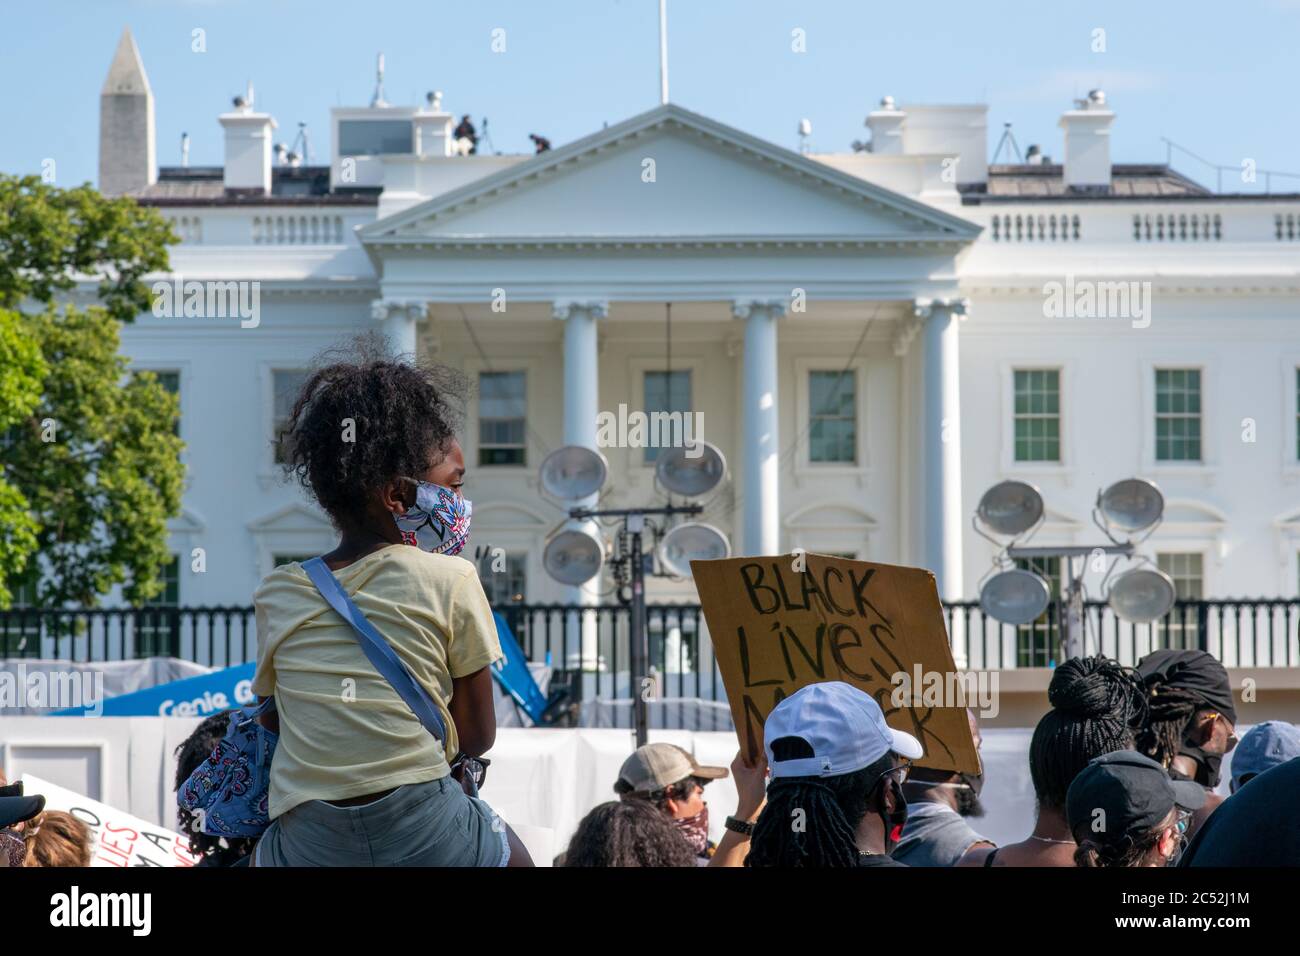 George Floyd et Black Lives Matter les manifestations se poursuivent à Lafayette Square près de la Maison Blanche à Washington, D.C. Banque D'Images